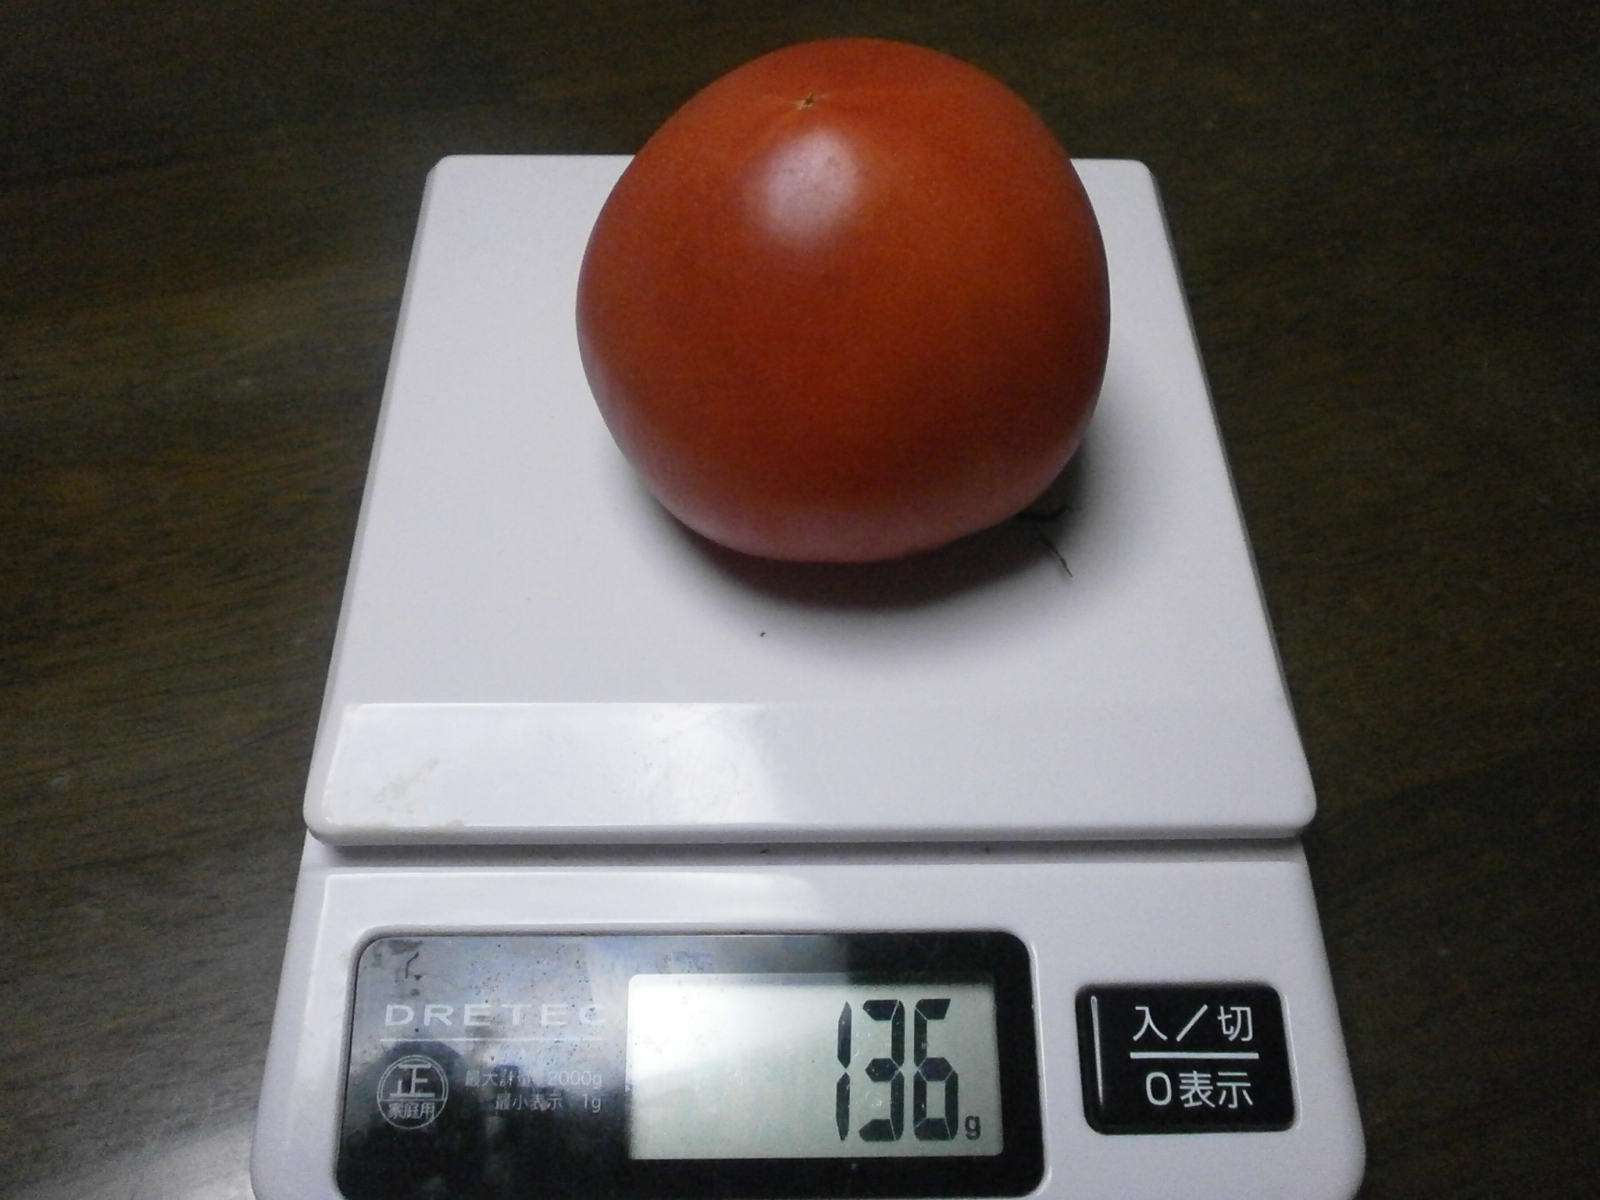 番茄 (141 g/ 136 g/121 g/120 g)